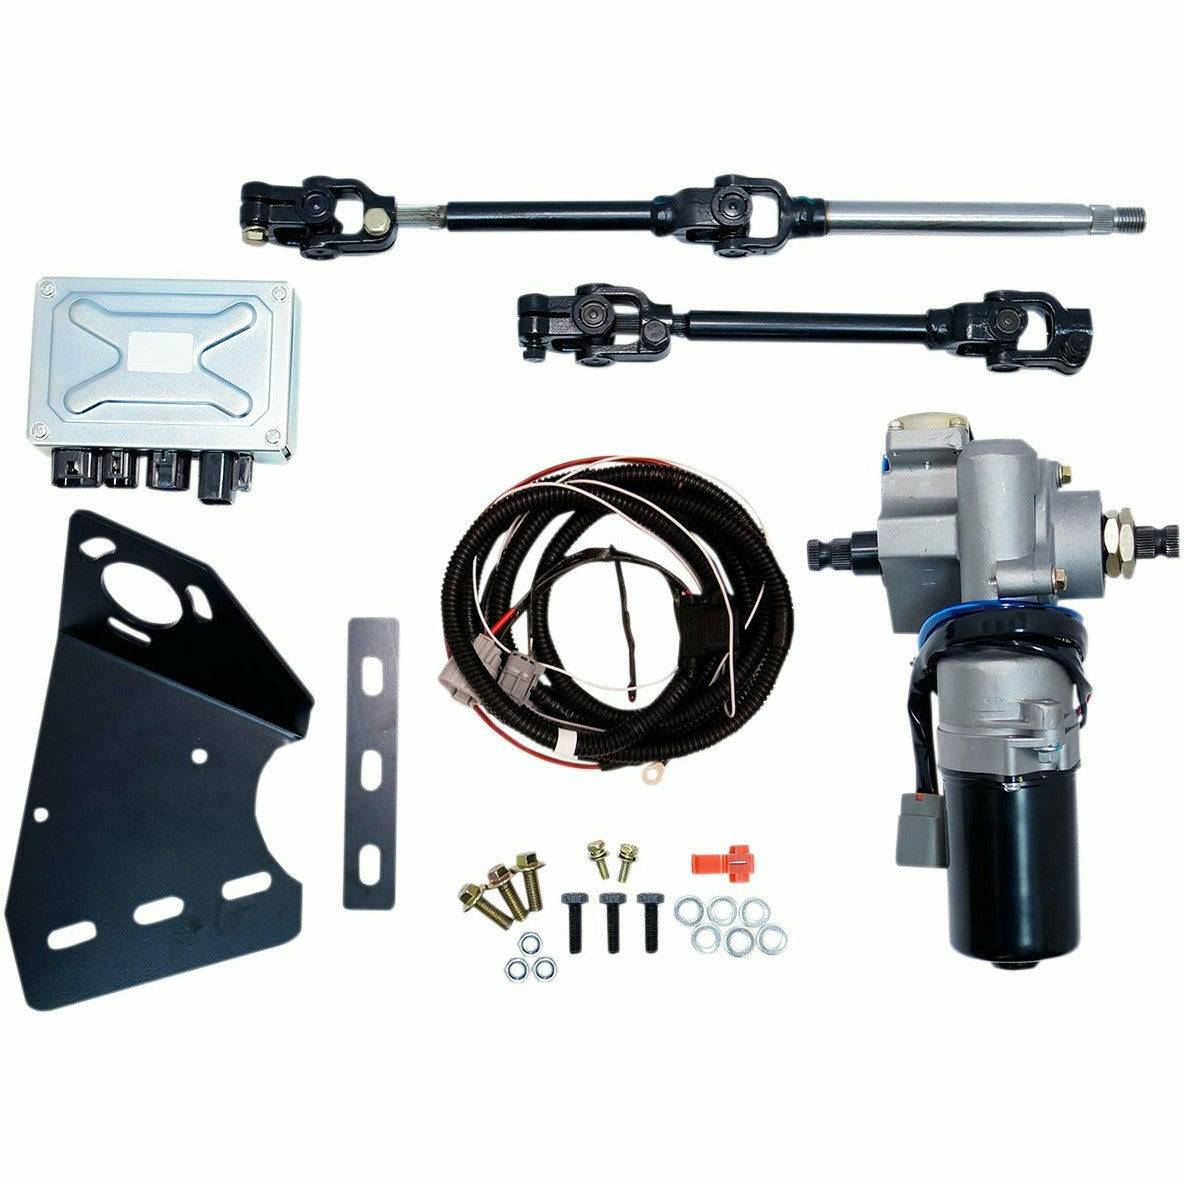 Moose Utility Polaris Ranger Power Steering Kit